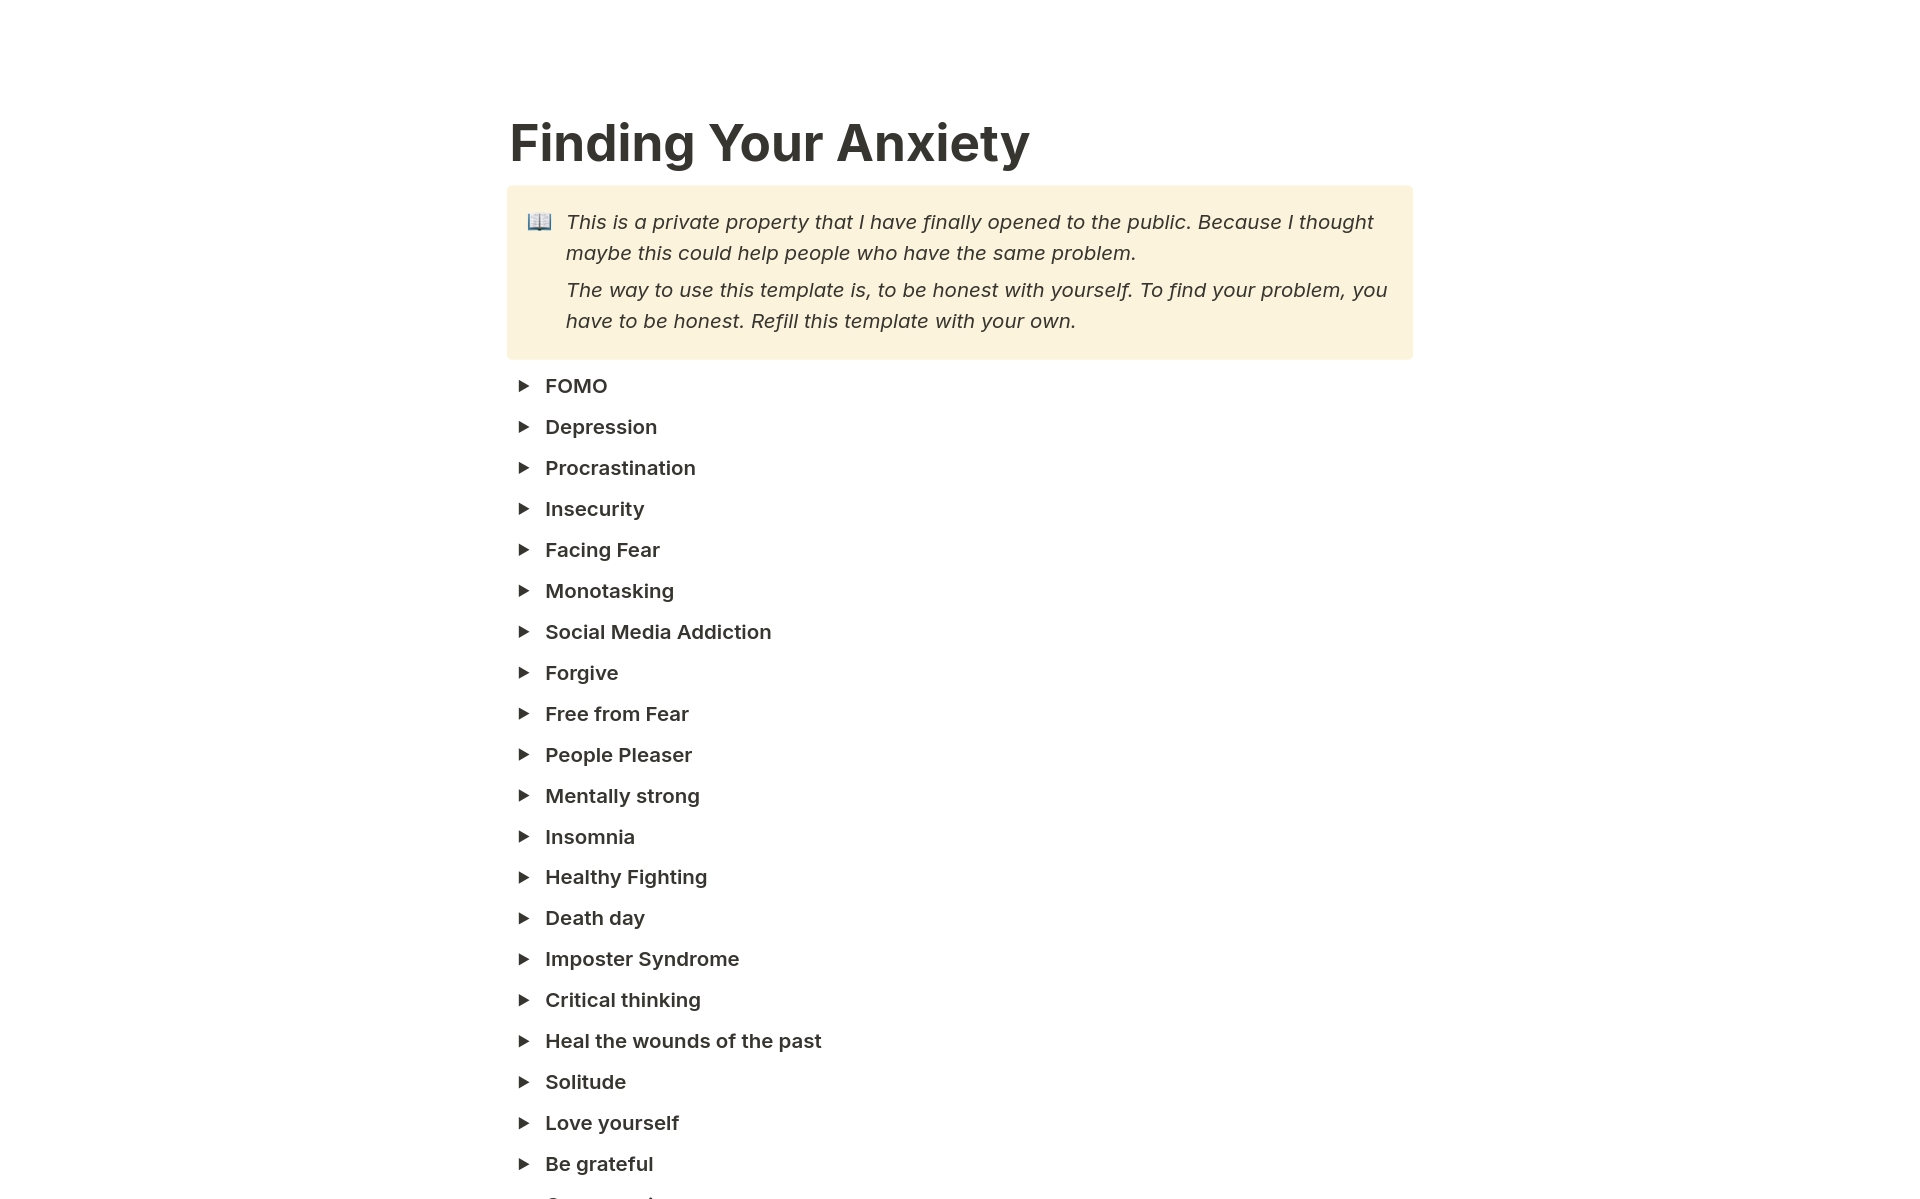 Uma prévia do modelo para Finding Your Anxiety